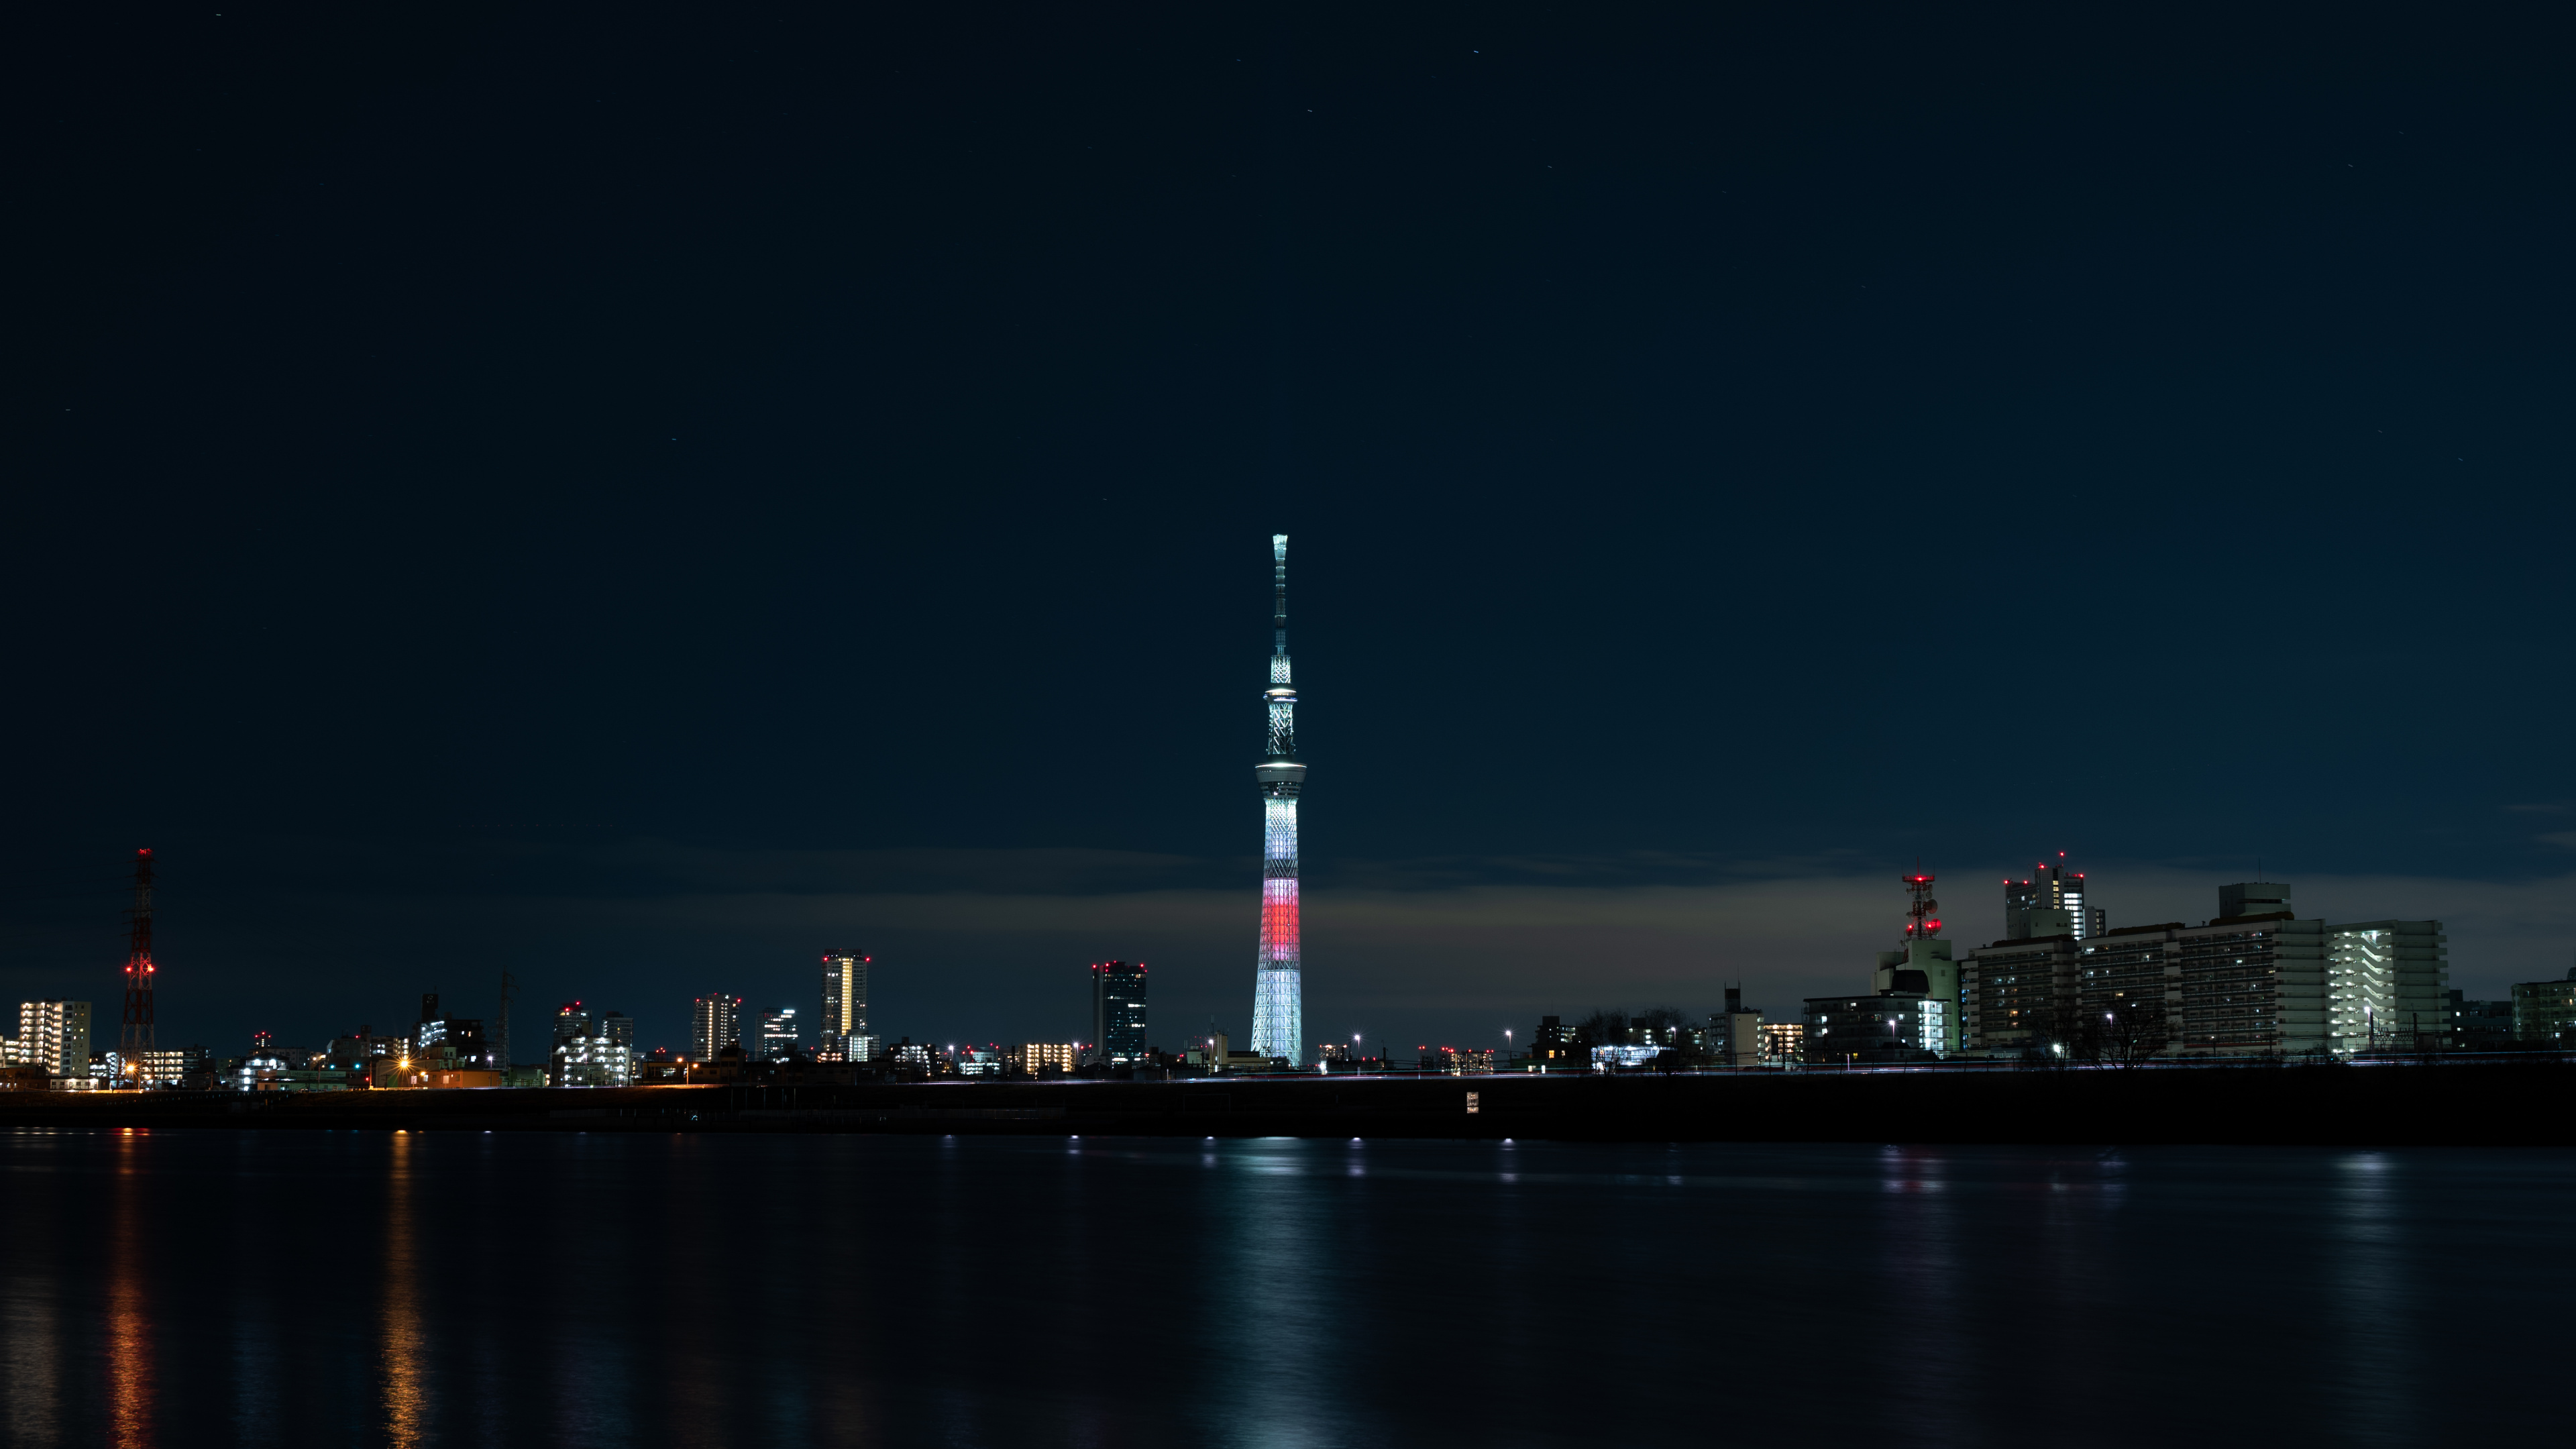 Weißer Und Roter Turm in Der Nähe Eines Gewässers Während Der Nacht. Wallpaper in 3840x2160 Resolution